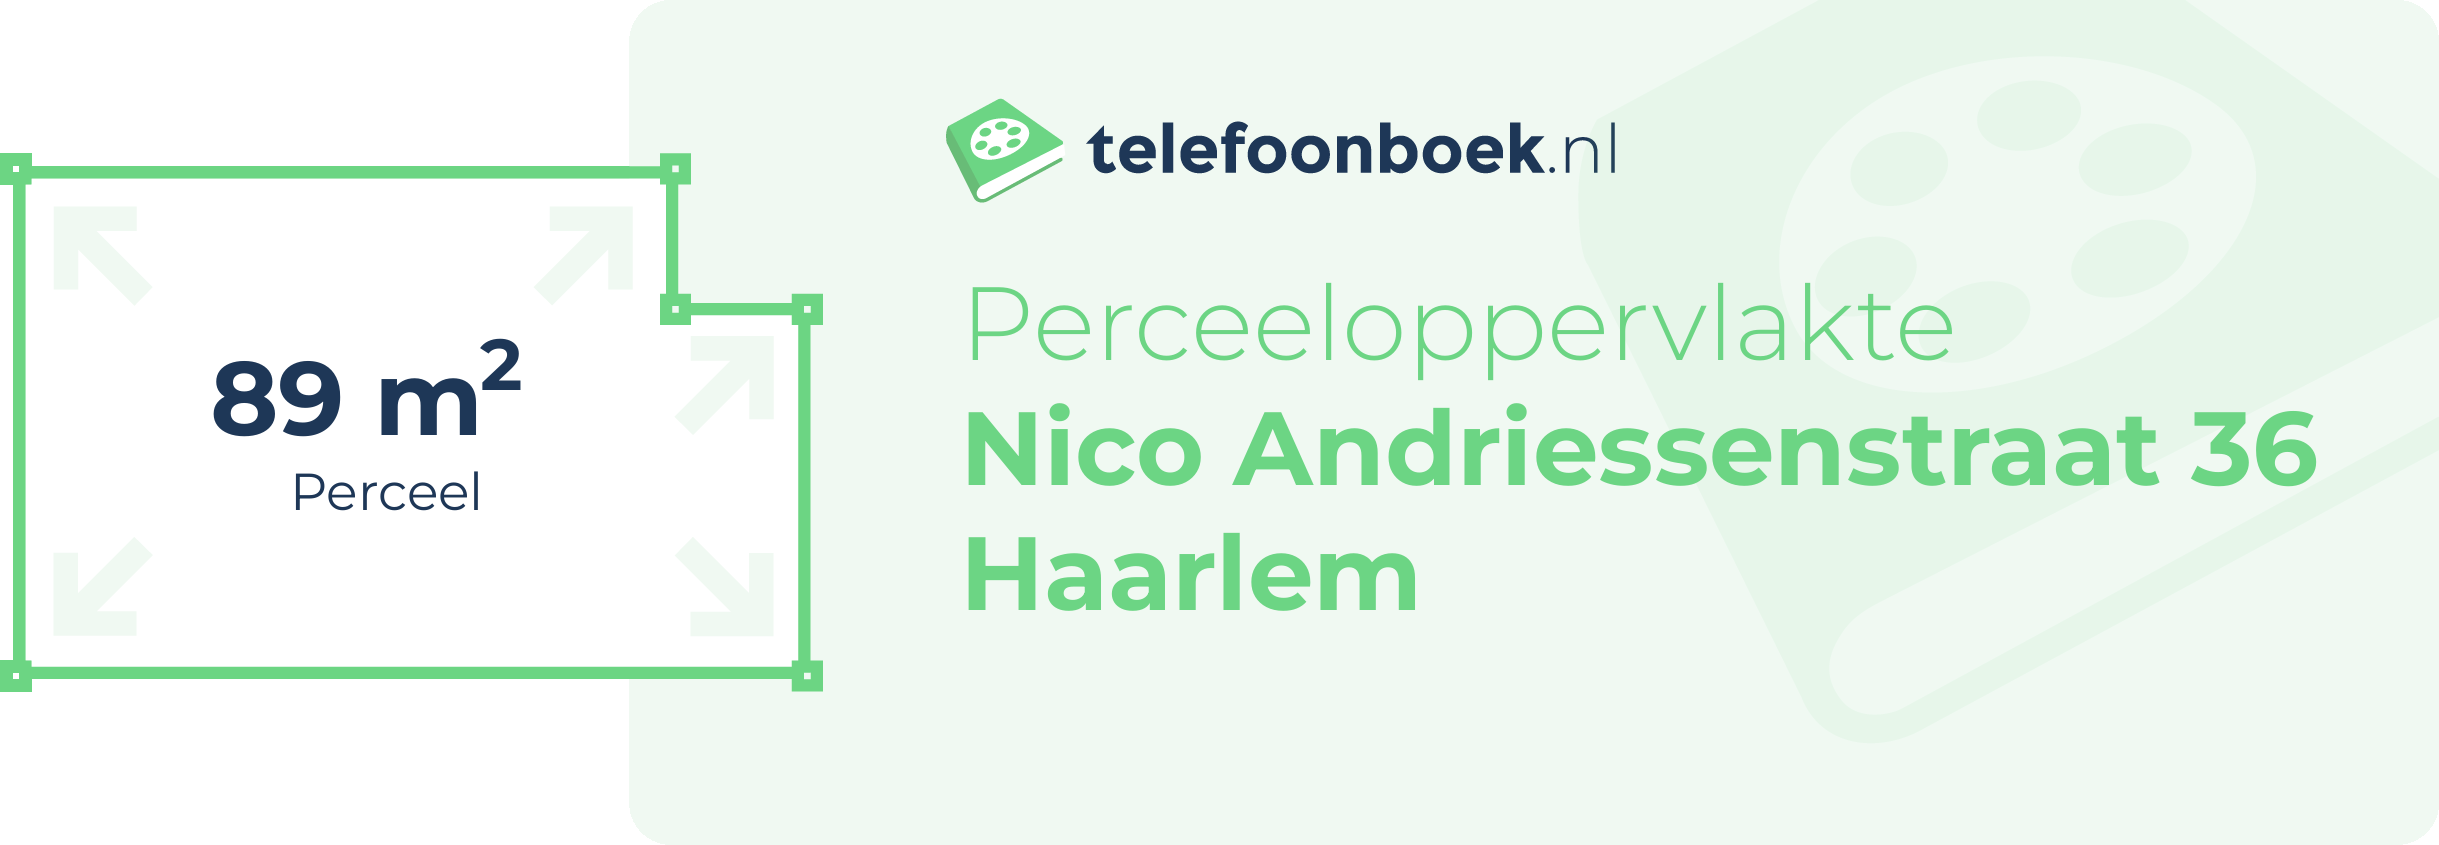 Perceeloppervlakte Nico Andriessenstraat 36 Haarlem